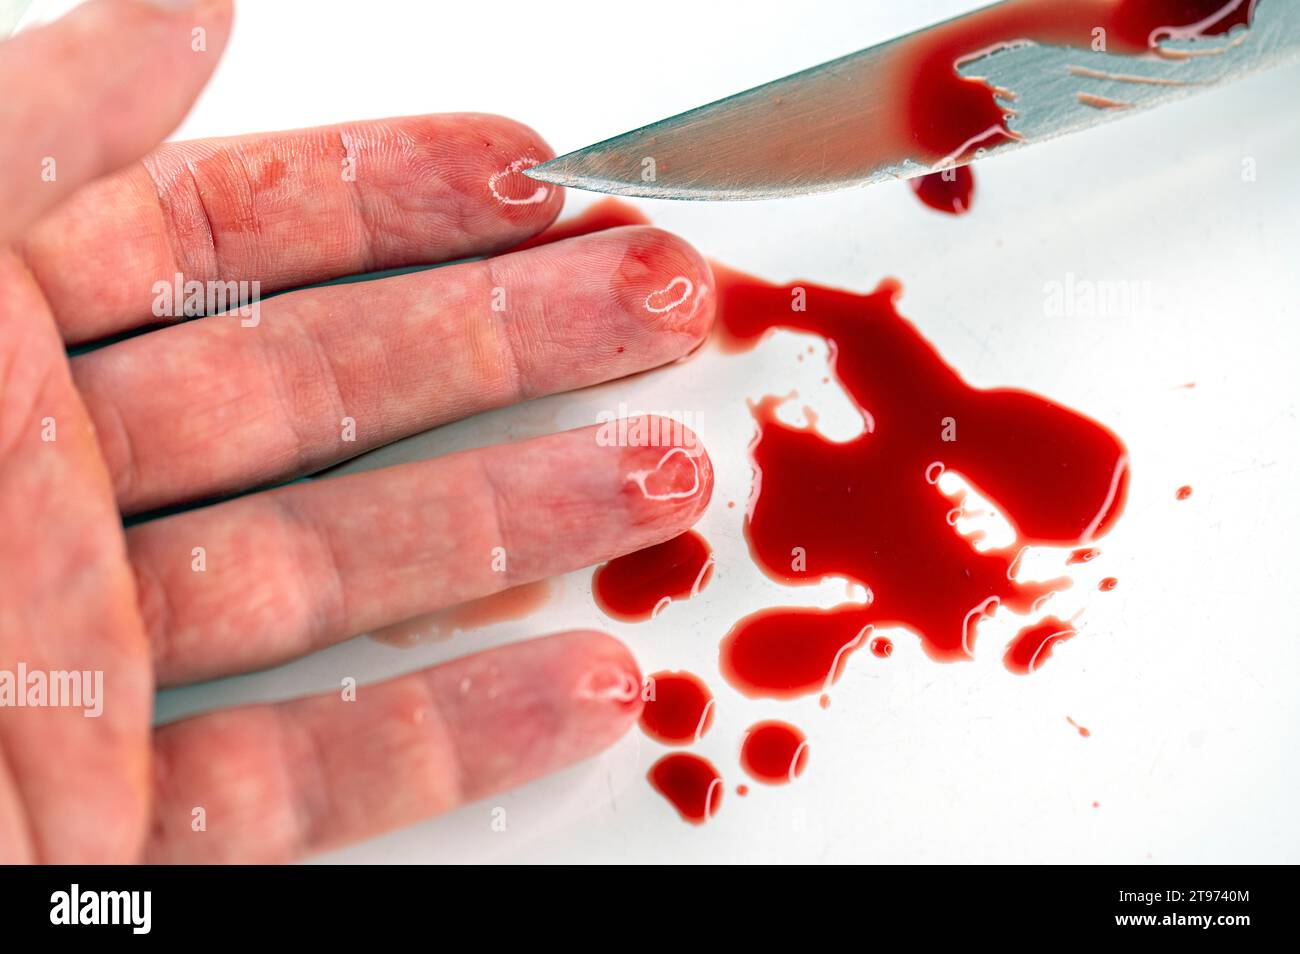 Primer plano del brazo en charco sangriento y cuchillo con sangre en la superficie blanca, cuadro conceptual sobre el suicidio y el asesinato Foto de stock